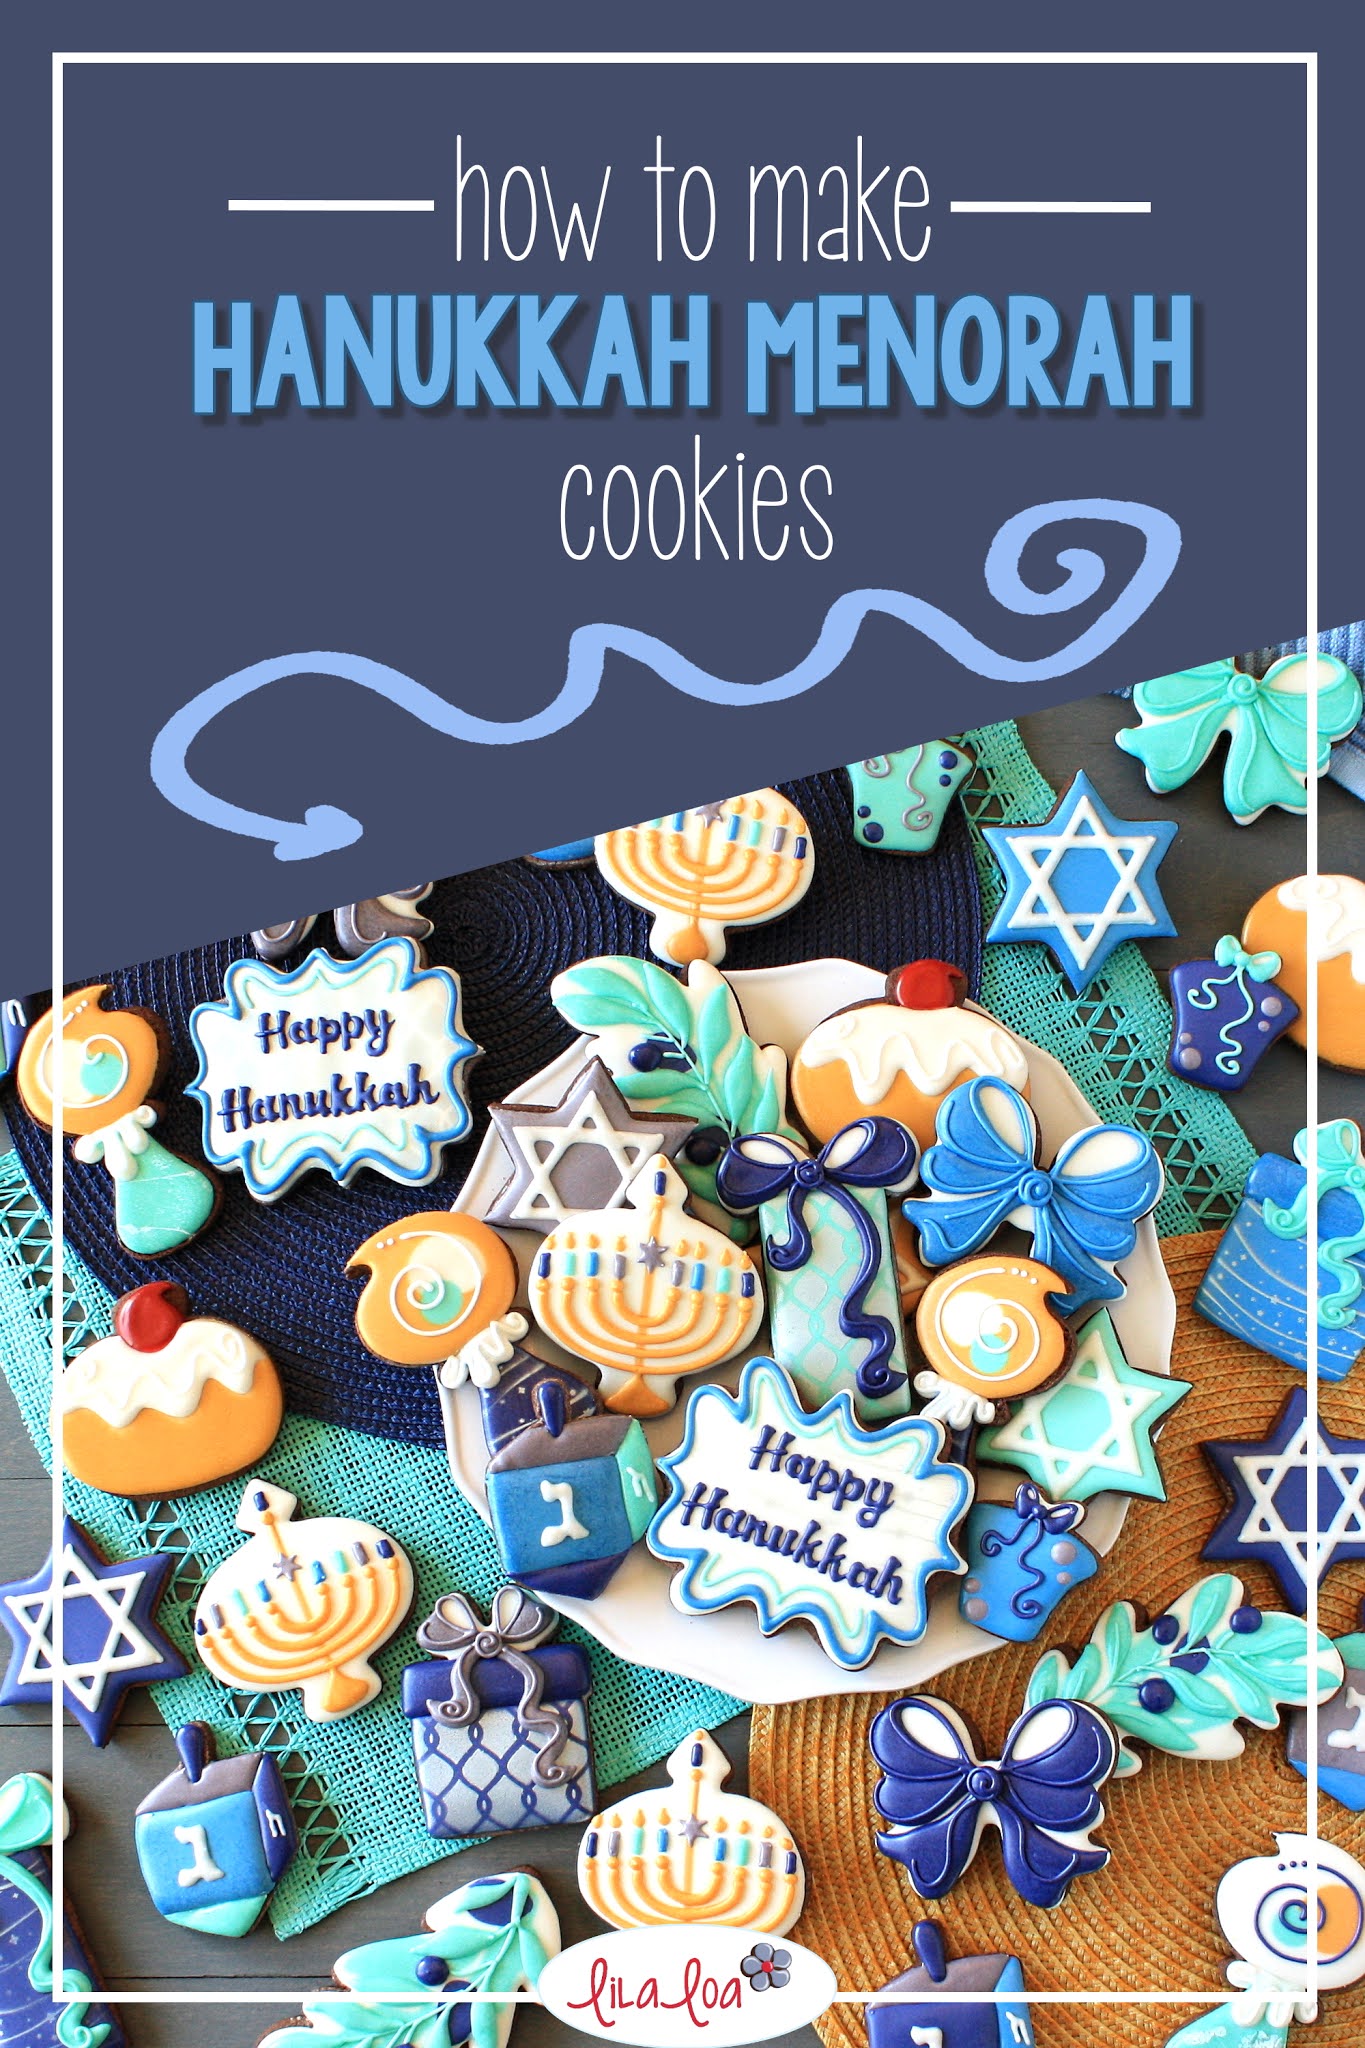 Hanukkah menorah cookie decorating tutorial